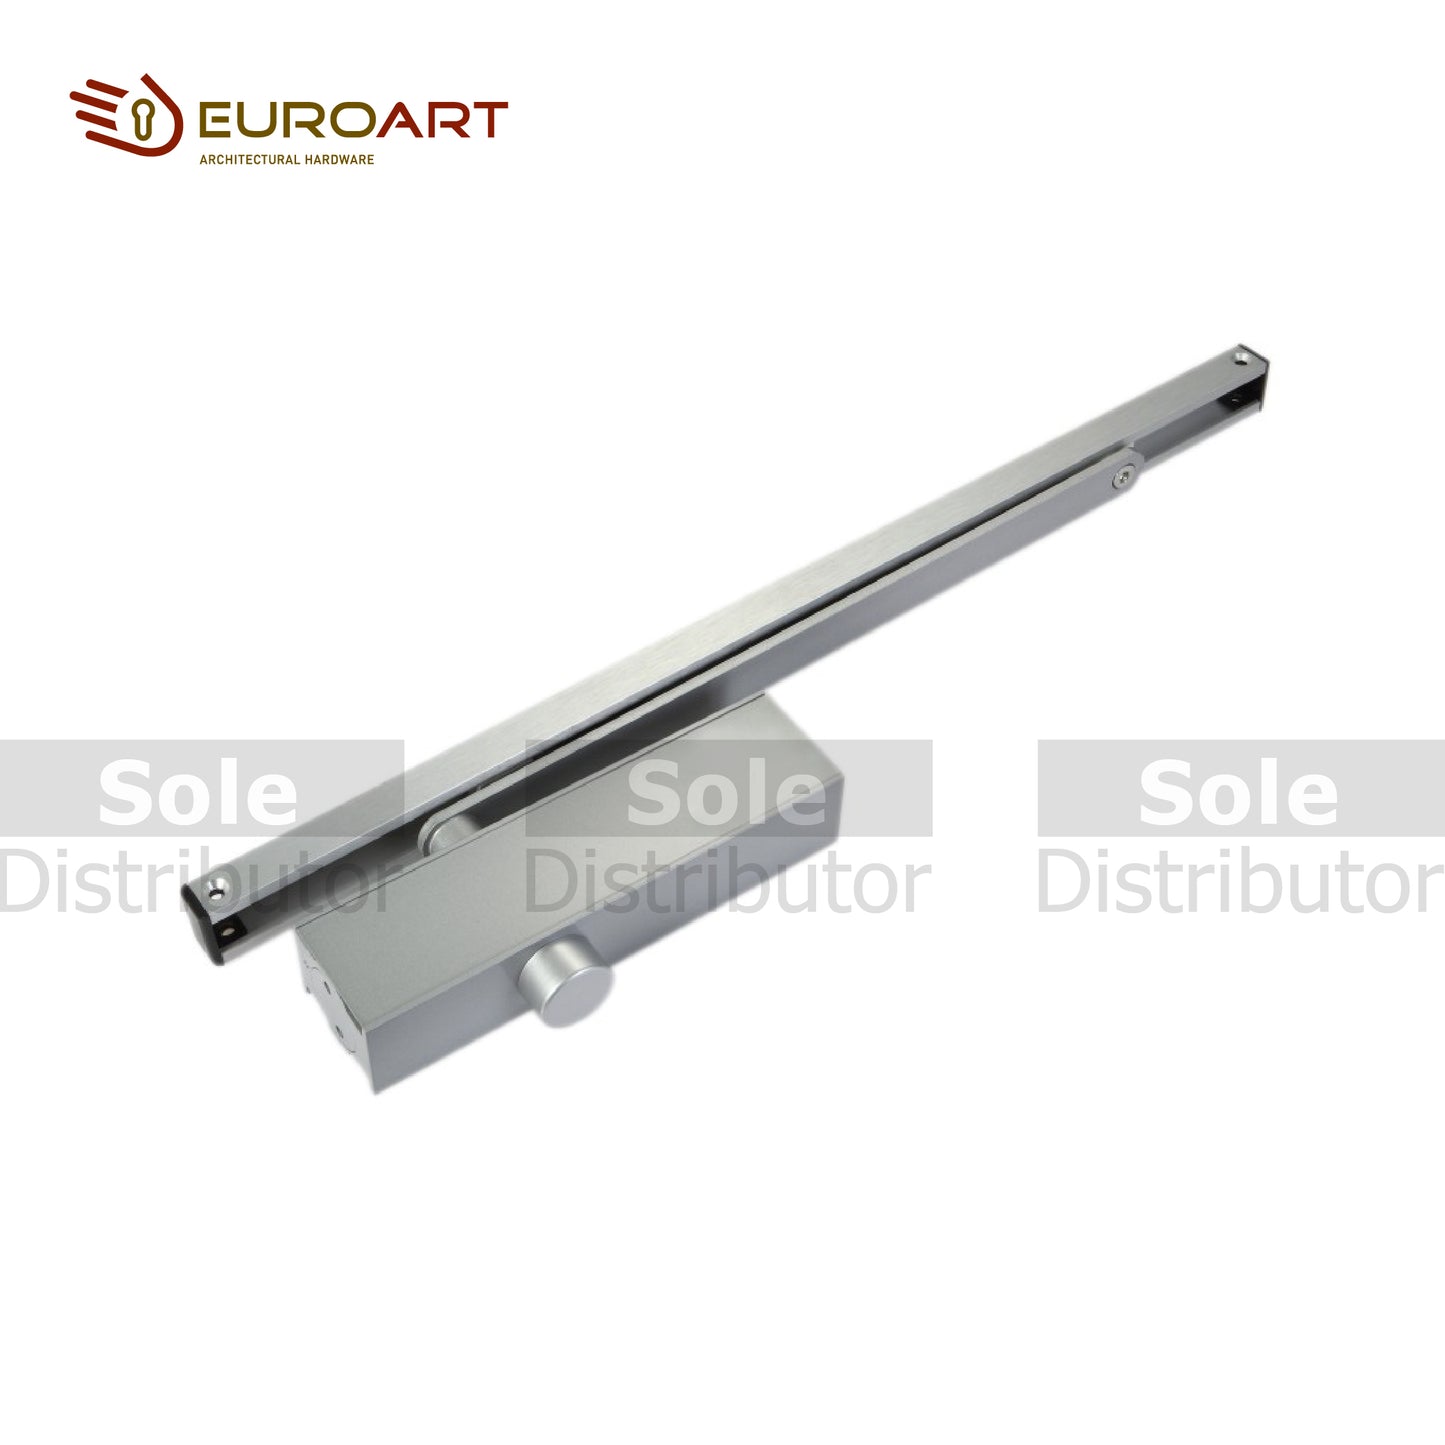 Euroart Standard Door Closers, for 45-80kg Doors 180° Opening Angle - DC5024